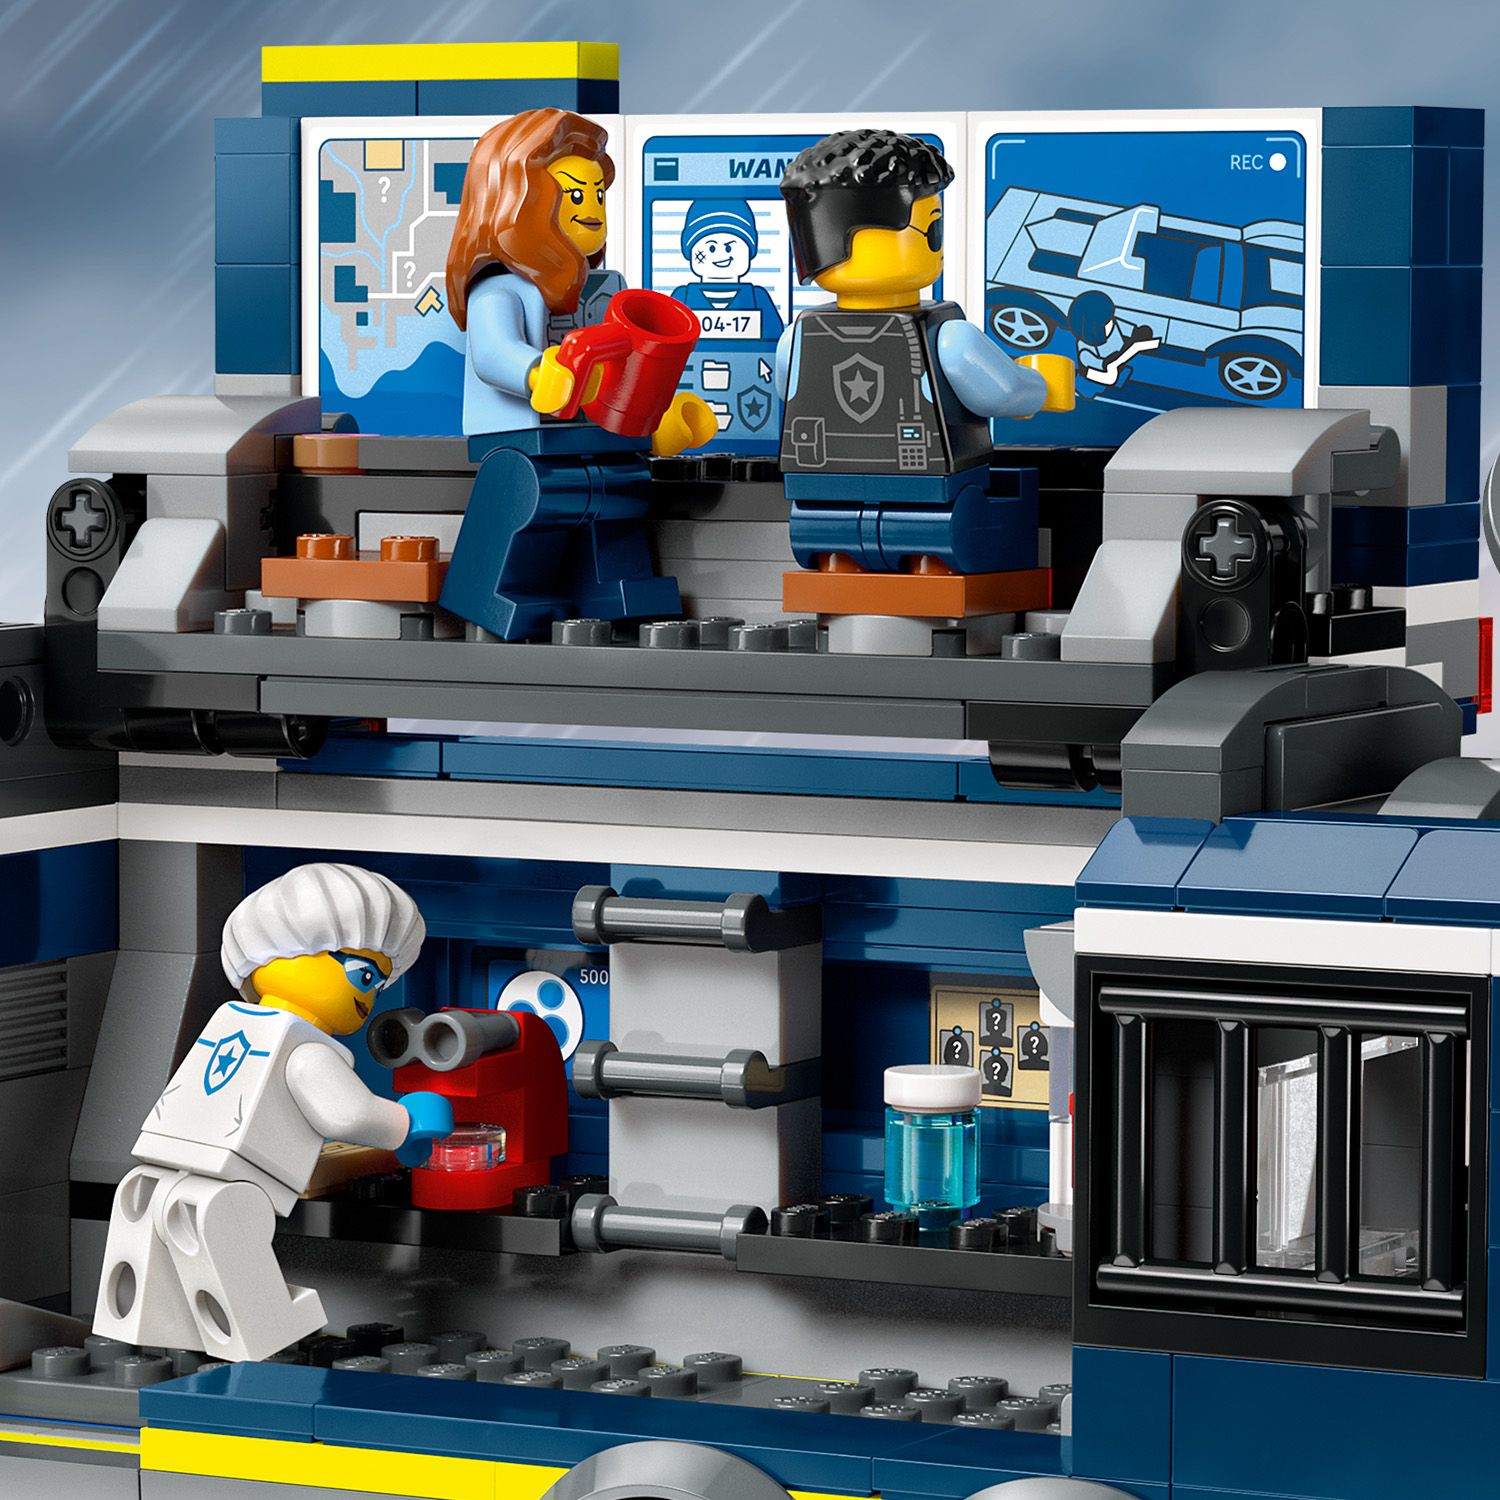 Конструктор LEGO City Передвижная полицейская криминалистическая лаборатория 674 детали (60418) - фото 7